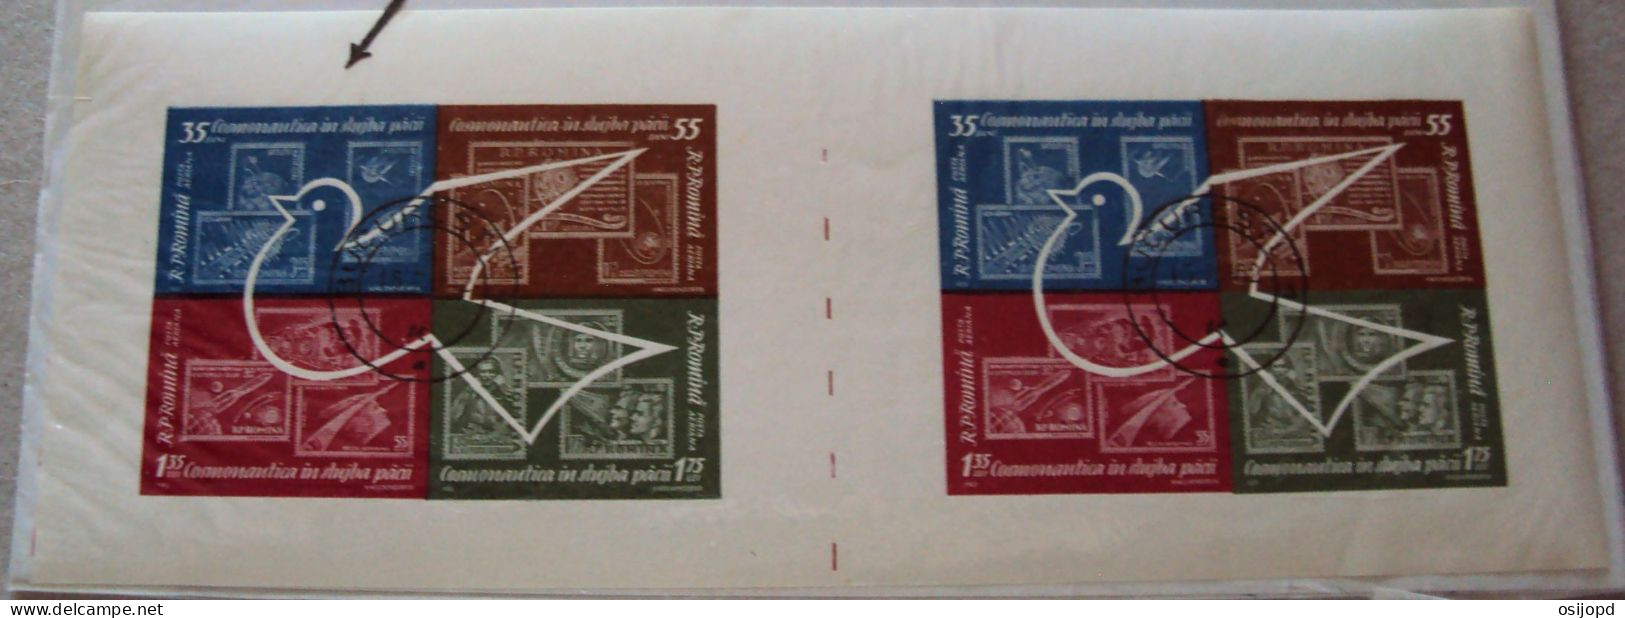 Rumänien, 1962, Bl 53, Kosmos, Blockpaar Ungetrennt,  Abart Buchstabe I Fehlt  In Artificial, Block Links, Gestempelt - Errors, Freaks & Oddities (EFO)